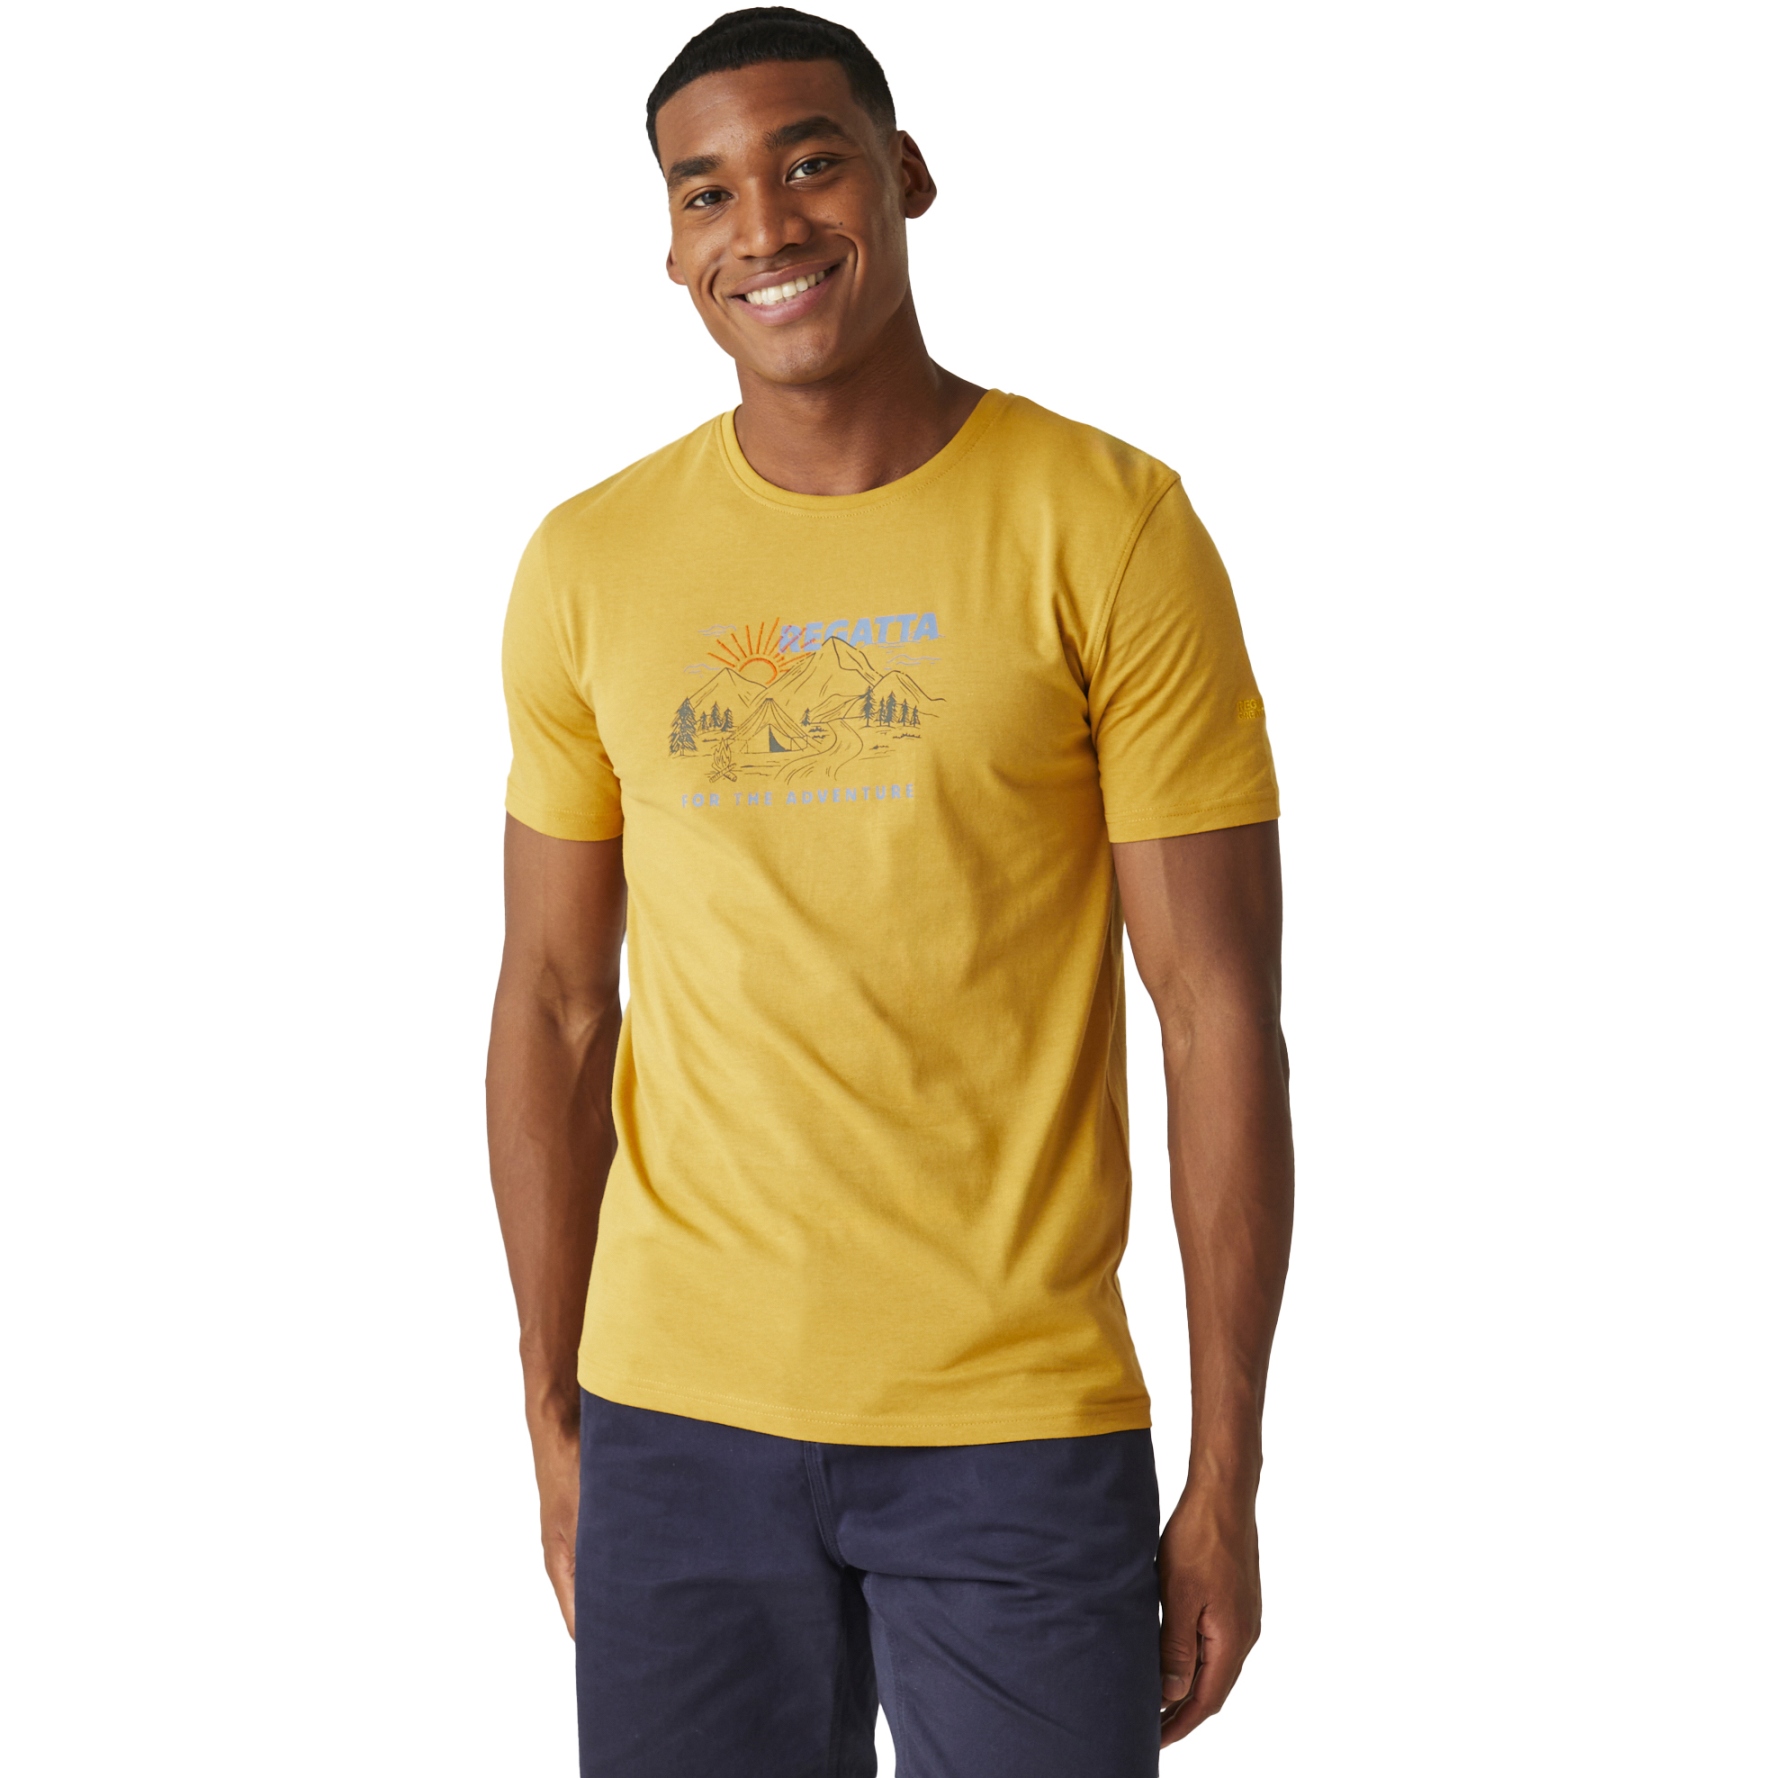 Produktbild von Regatta Cline VIII T-Shirt Herren - Gold Straw BIM